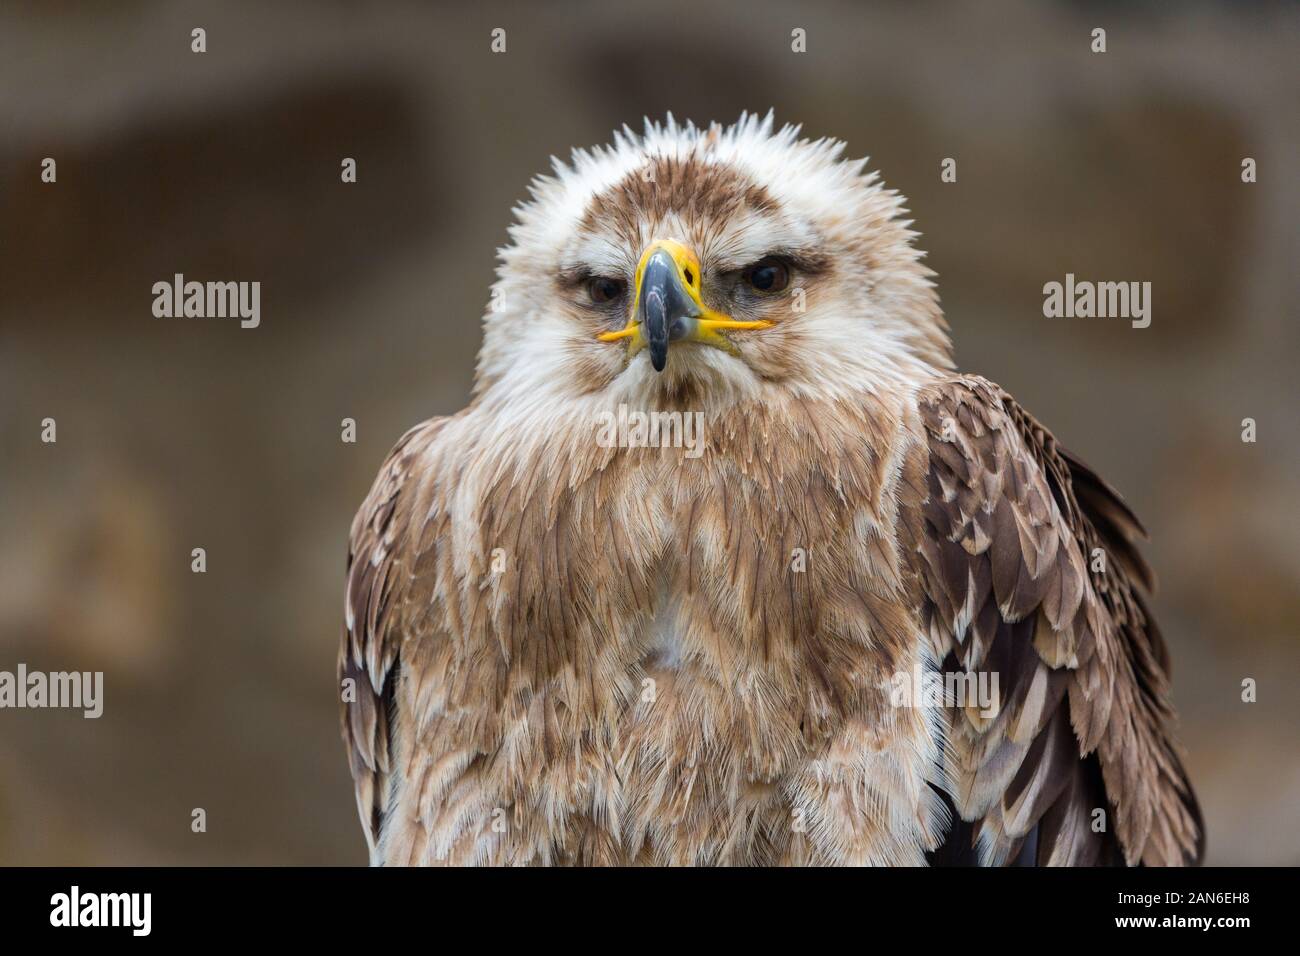 Porträt eines Aquila Heliaca - bekannt als ostimperialer Adler. Greifvogel. Neutraler Hintergrund. Stockfoto